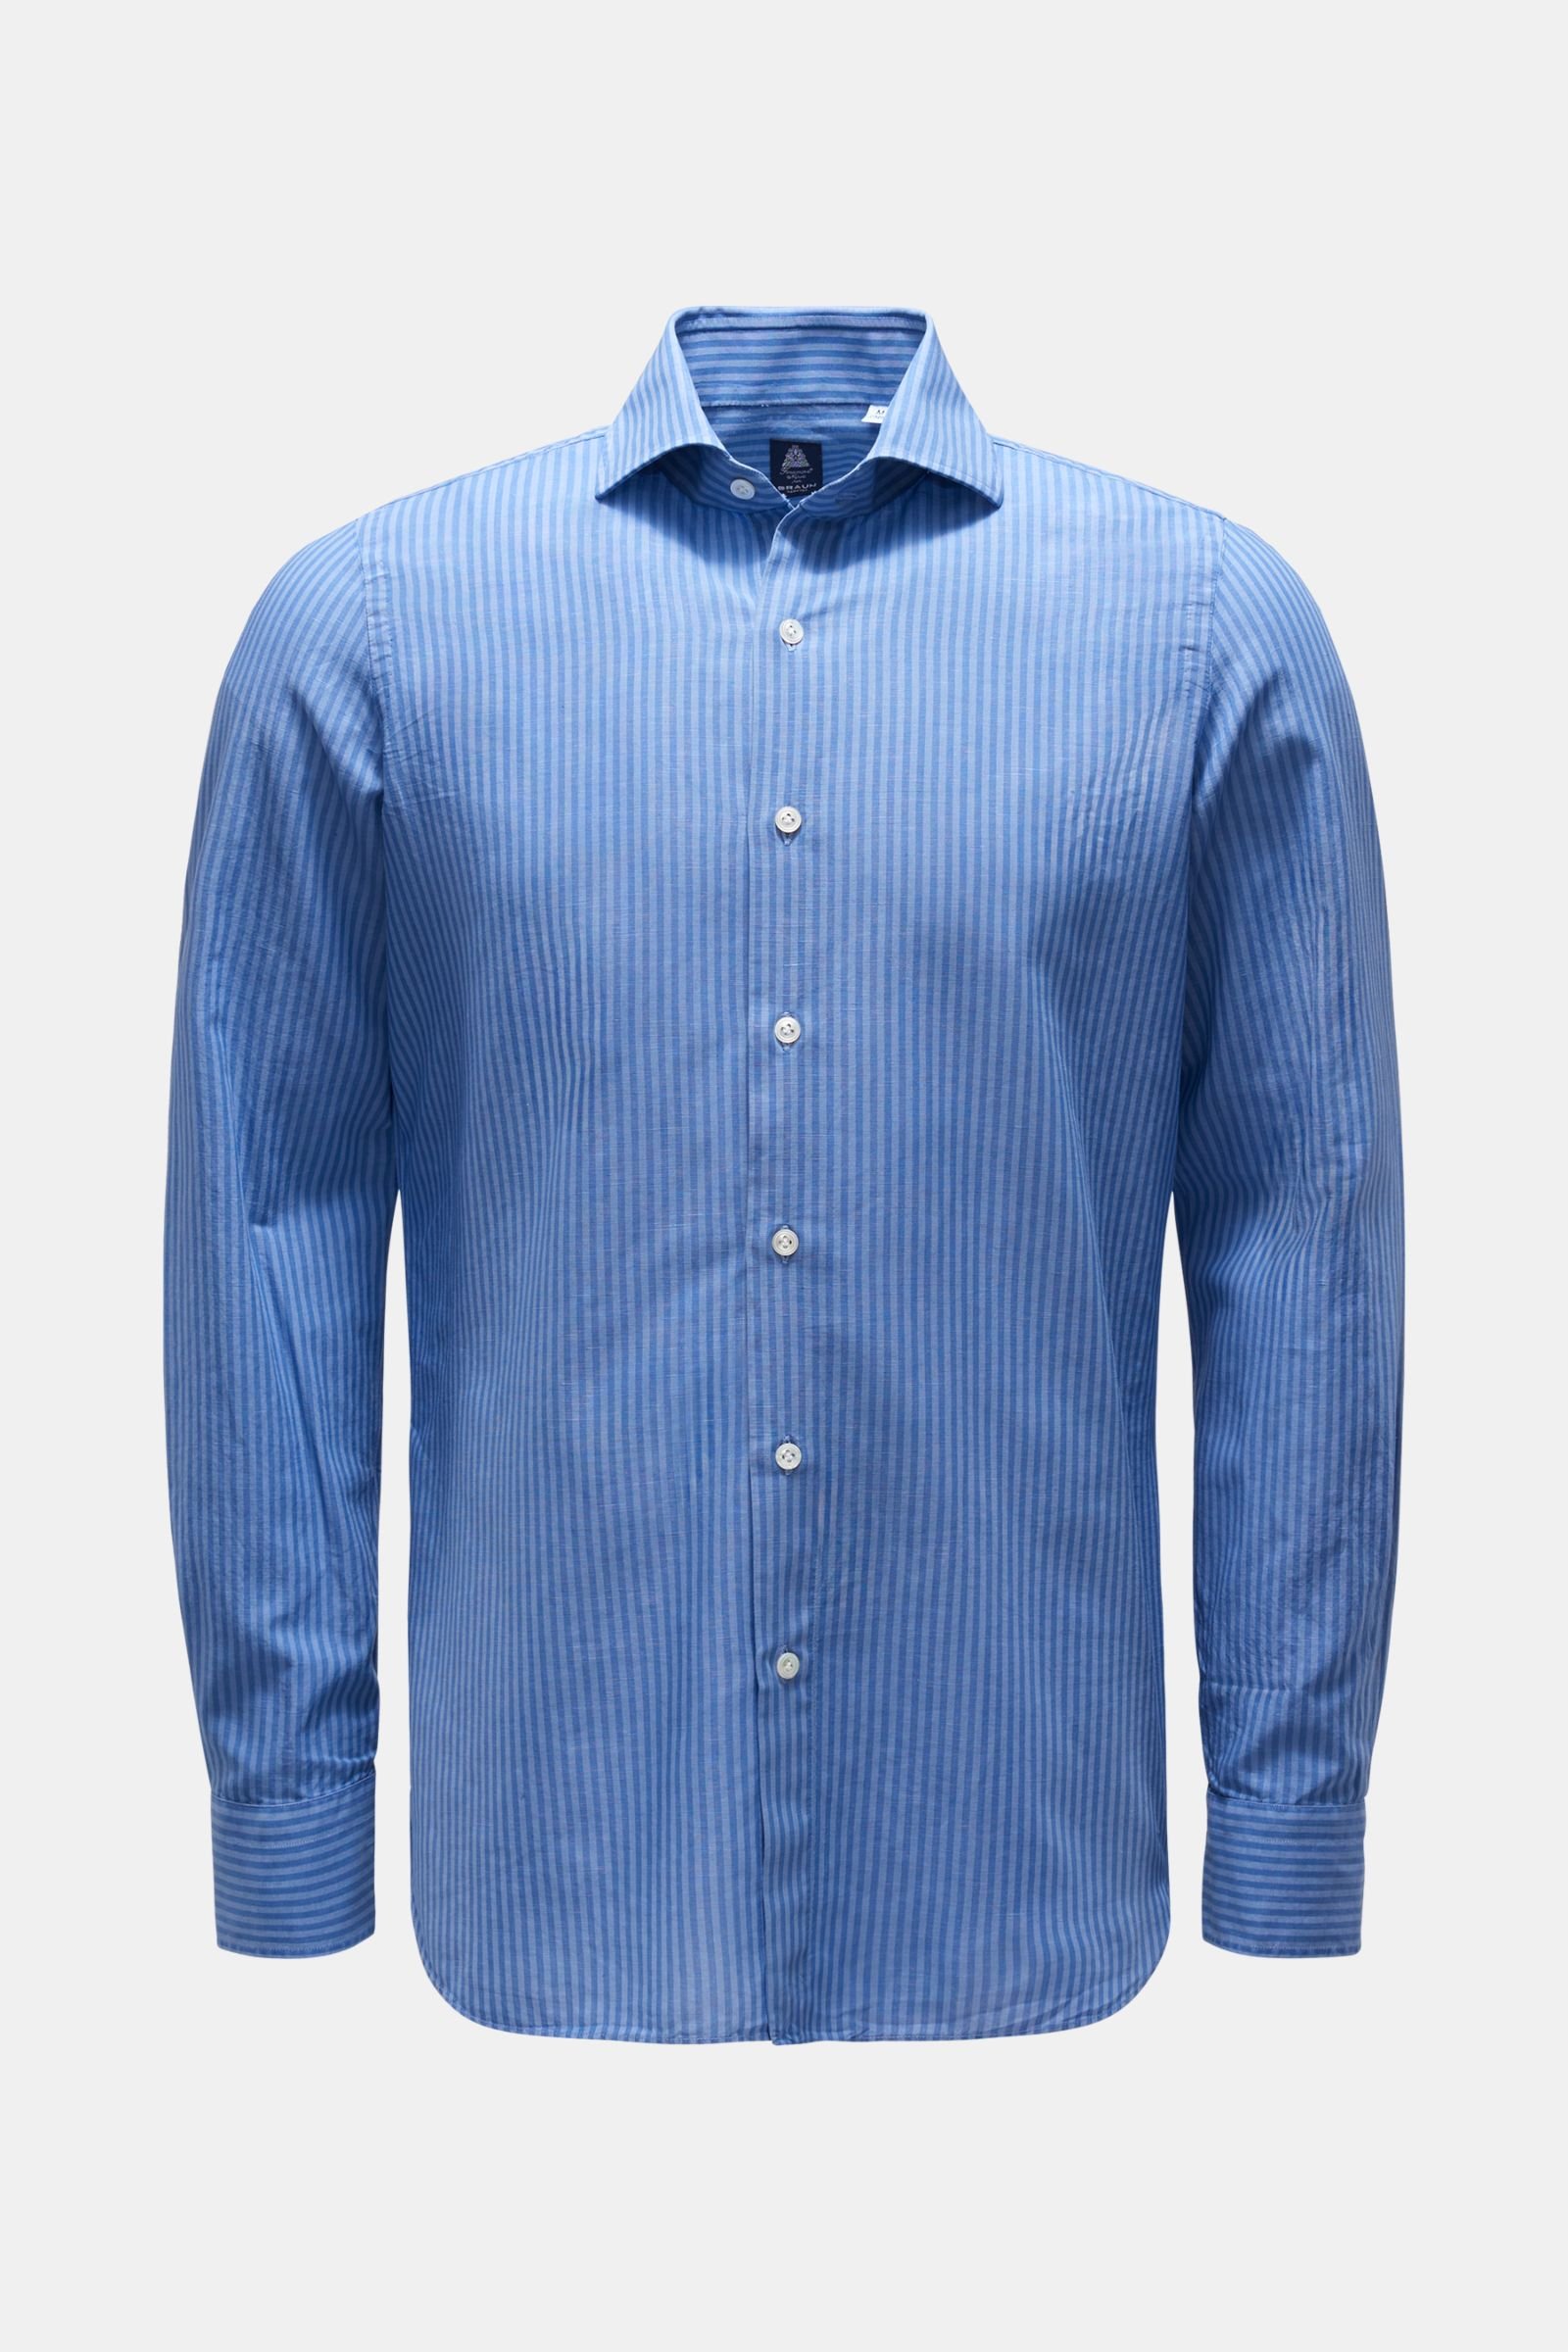 Casual shirt 'Eduardo Napoli' shark collar smoky blue/blue striped